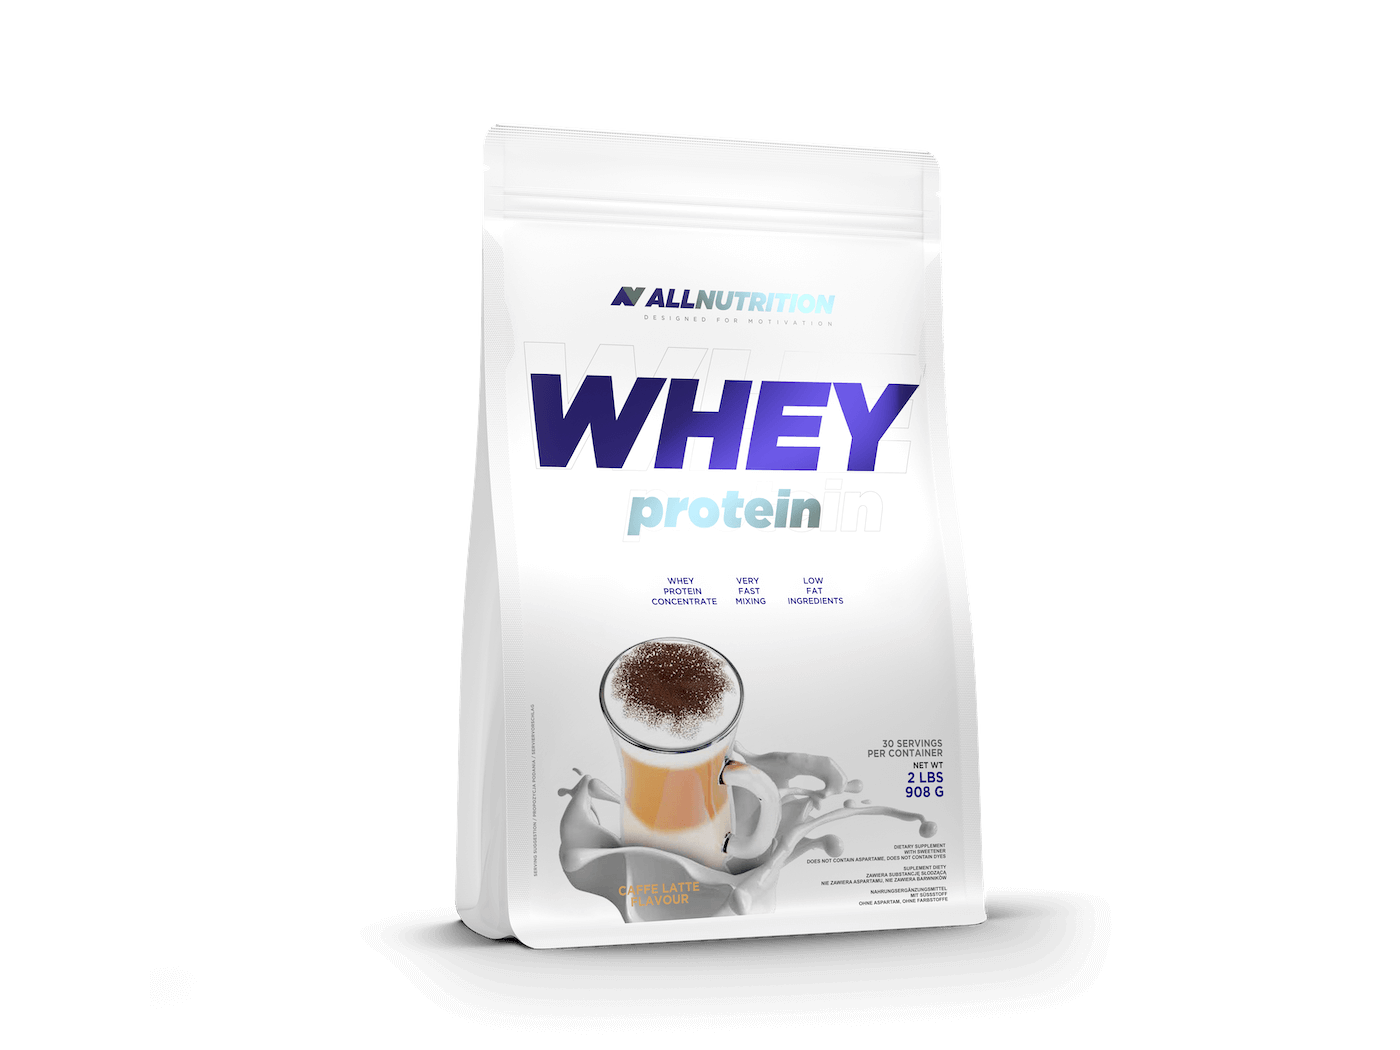 Allnutrition Whey Protein - Caffe Latte 908g